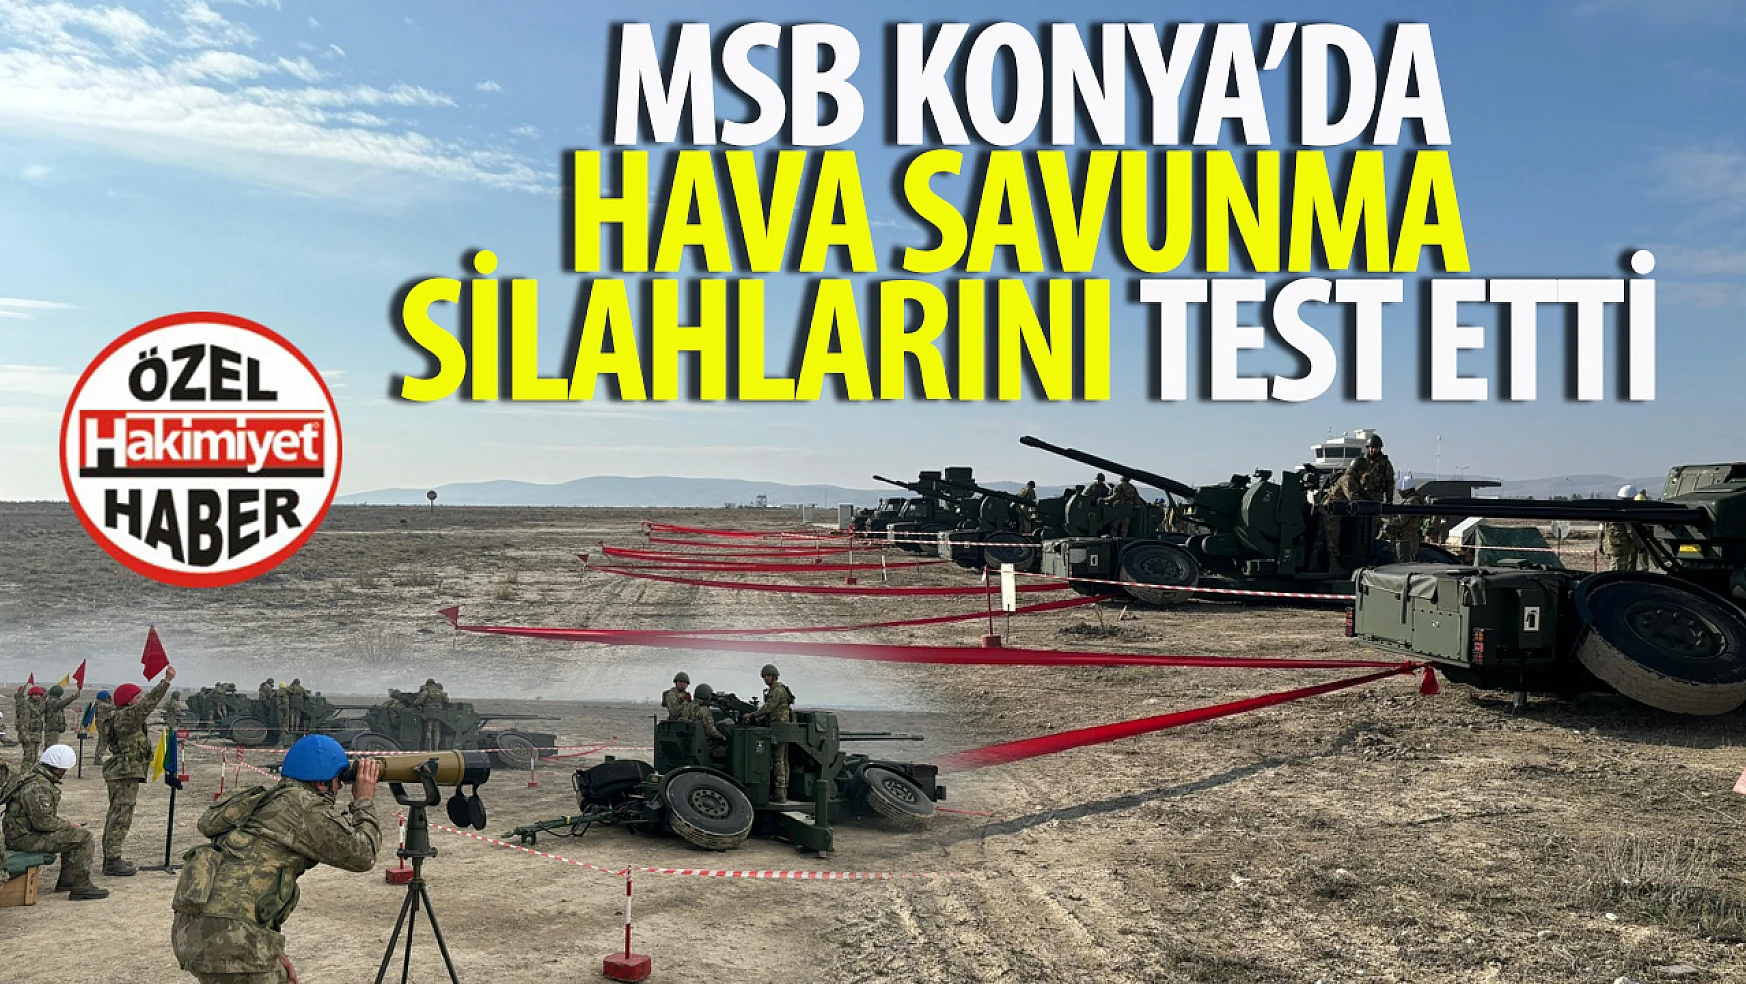 Türk Silahlı Kuvvetleri'nden Konya'da Başarılı Atış Testi: Hava Savunma Silahları ile Kara Hedeflere Atış Faaliyeti